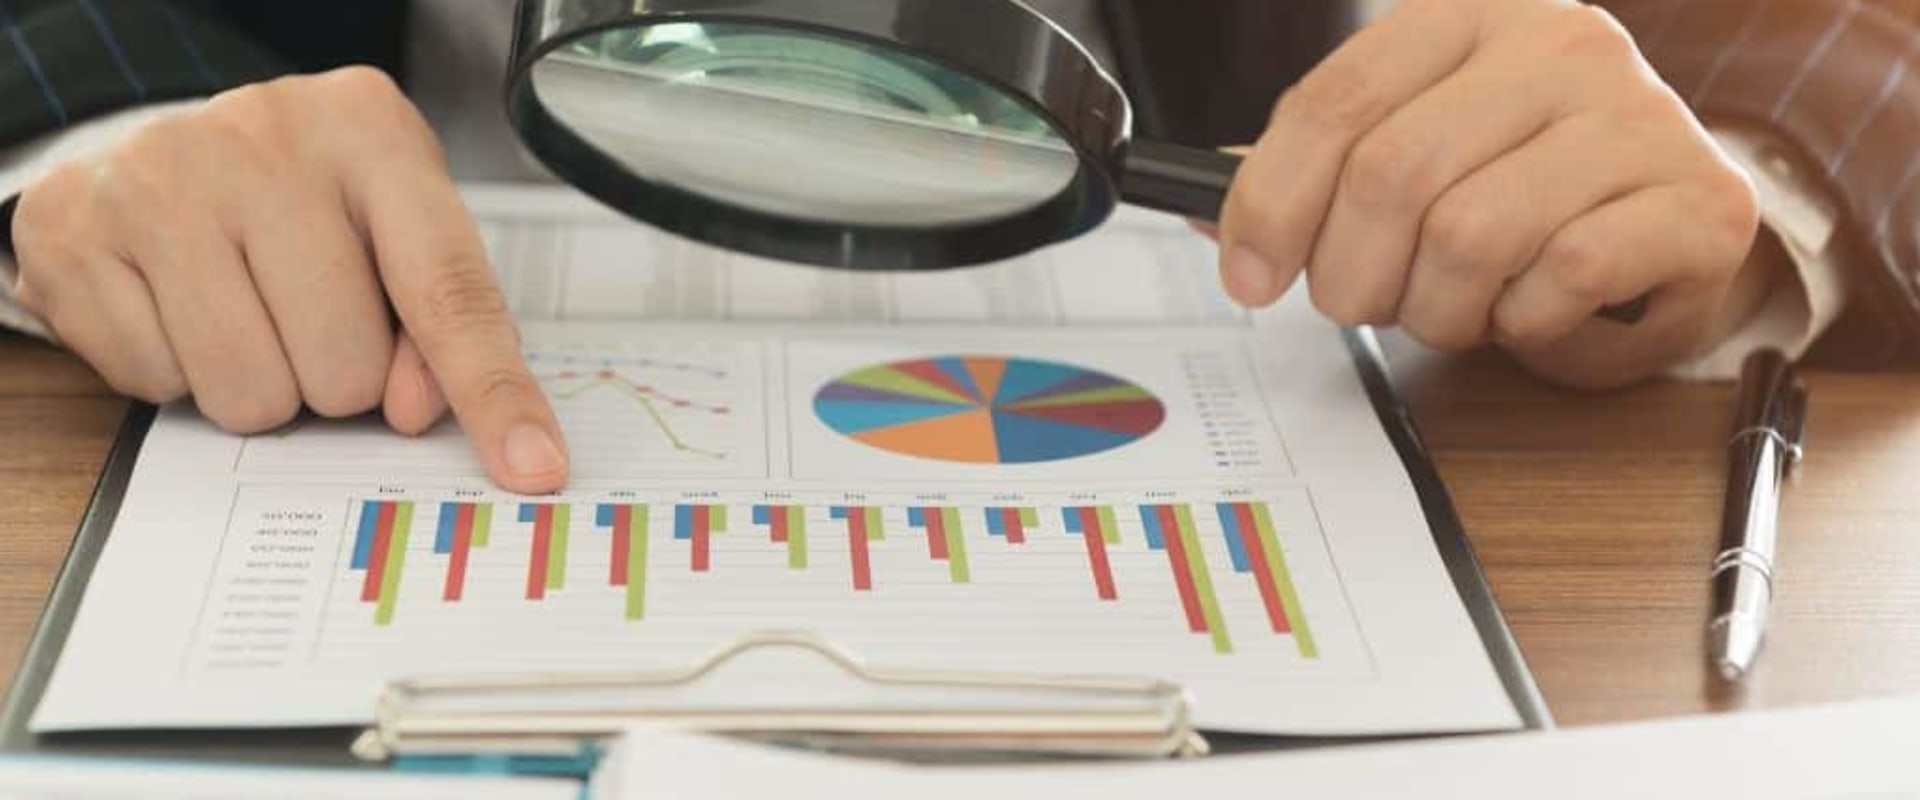 Understanding a Financial Statement External Audit Report Example